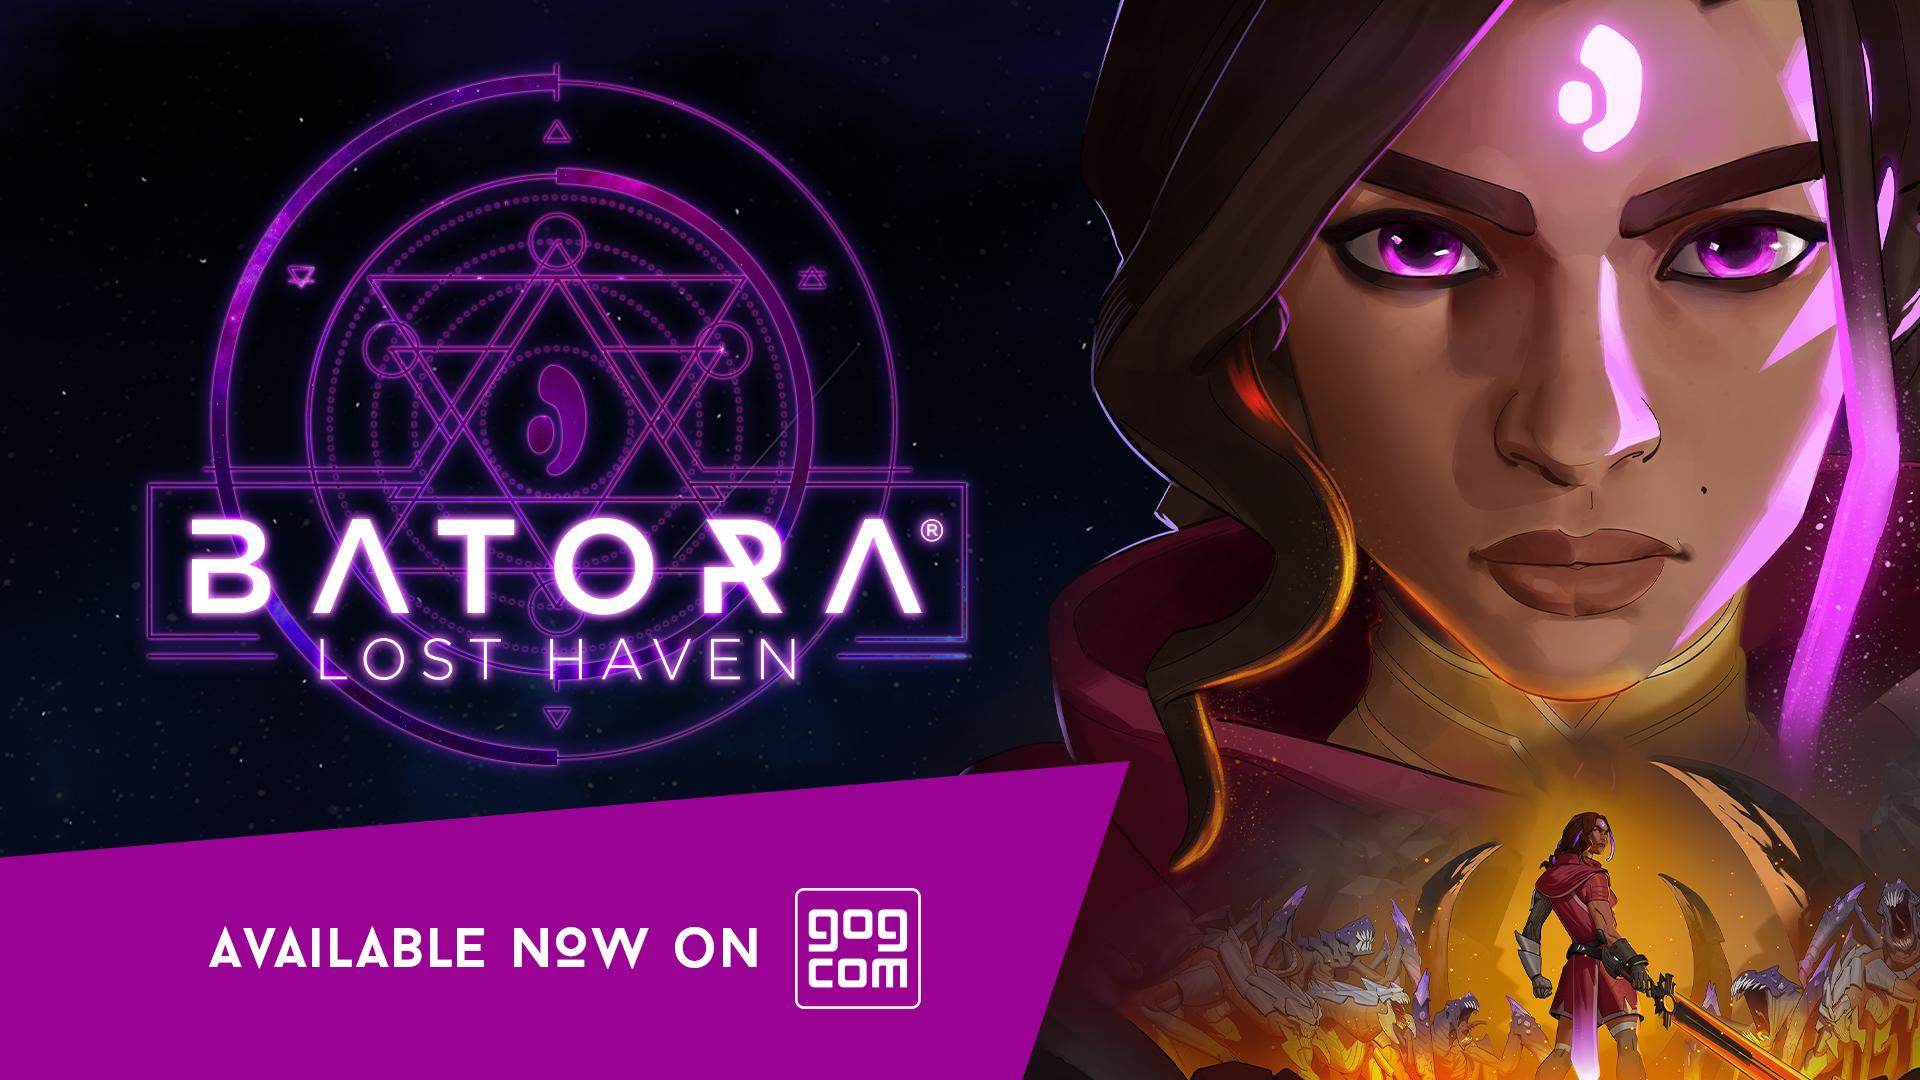 Batora: Lost Haven reaches GOG.com